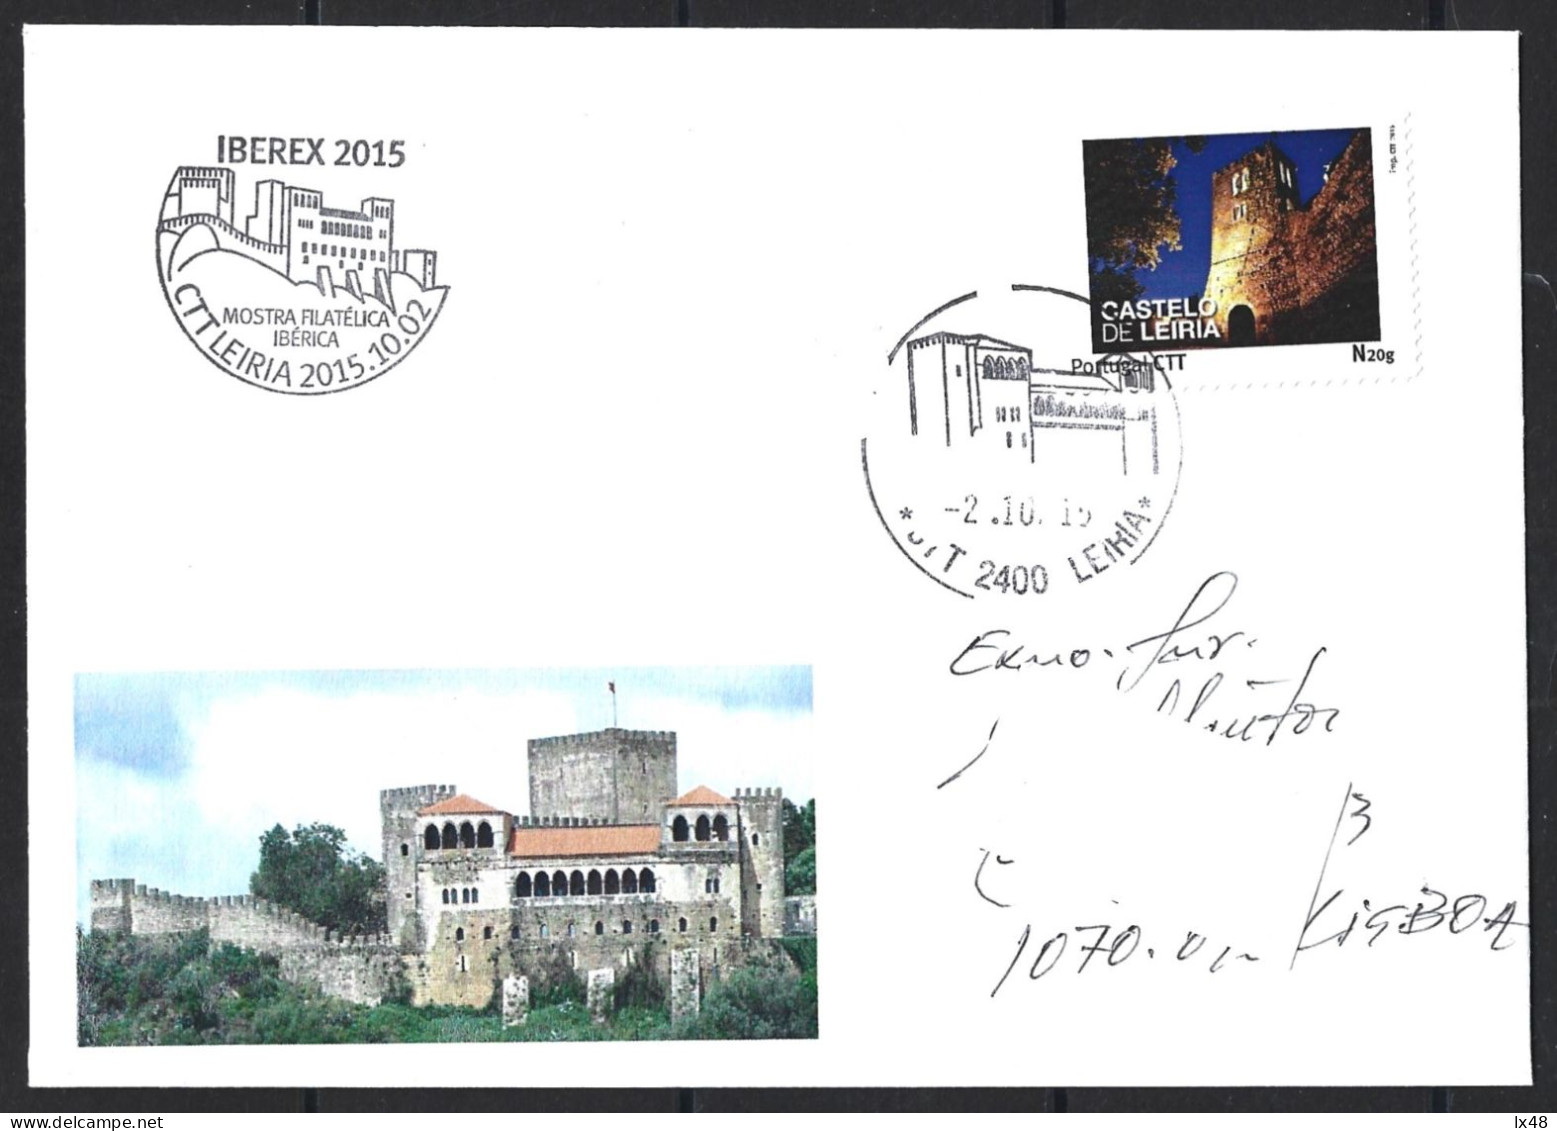 Castelo De Leiria. Envelope Circulado Com Stamp Personalizado E Obliteração Do Castelo De Leiria 2015. Leiria Castle. Ci - Cartas & Documentos